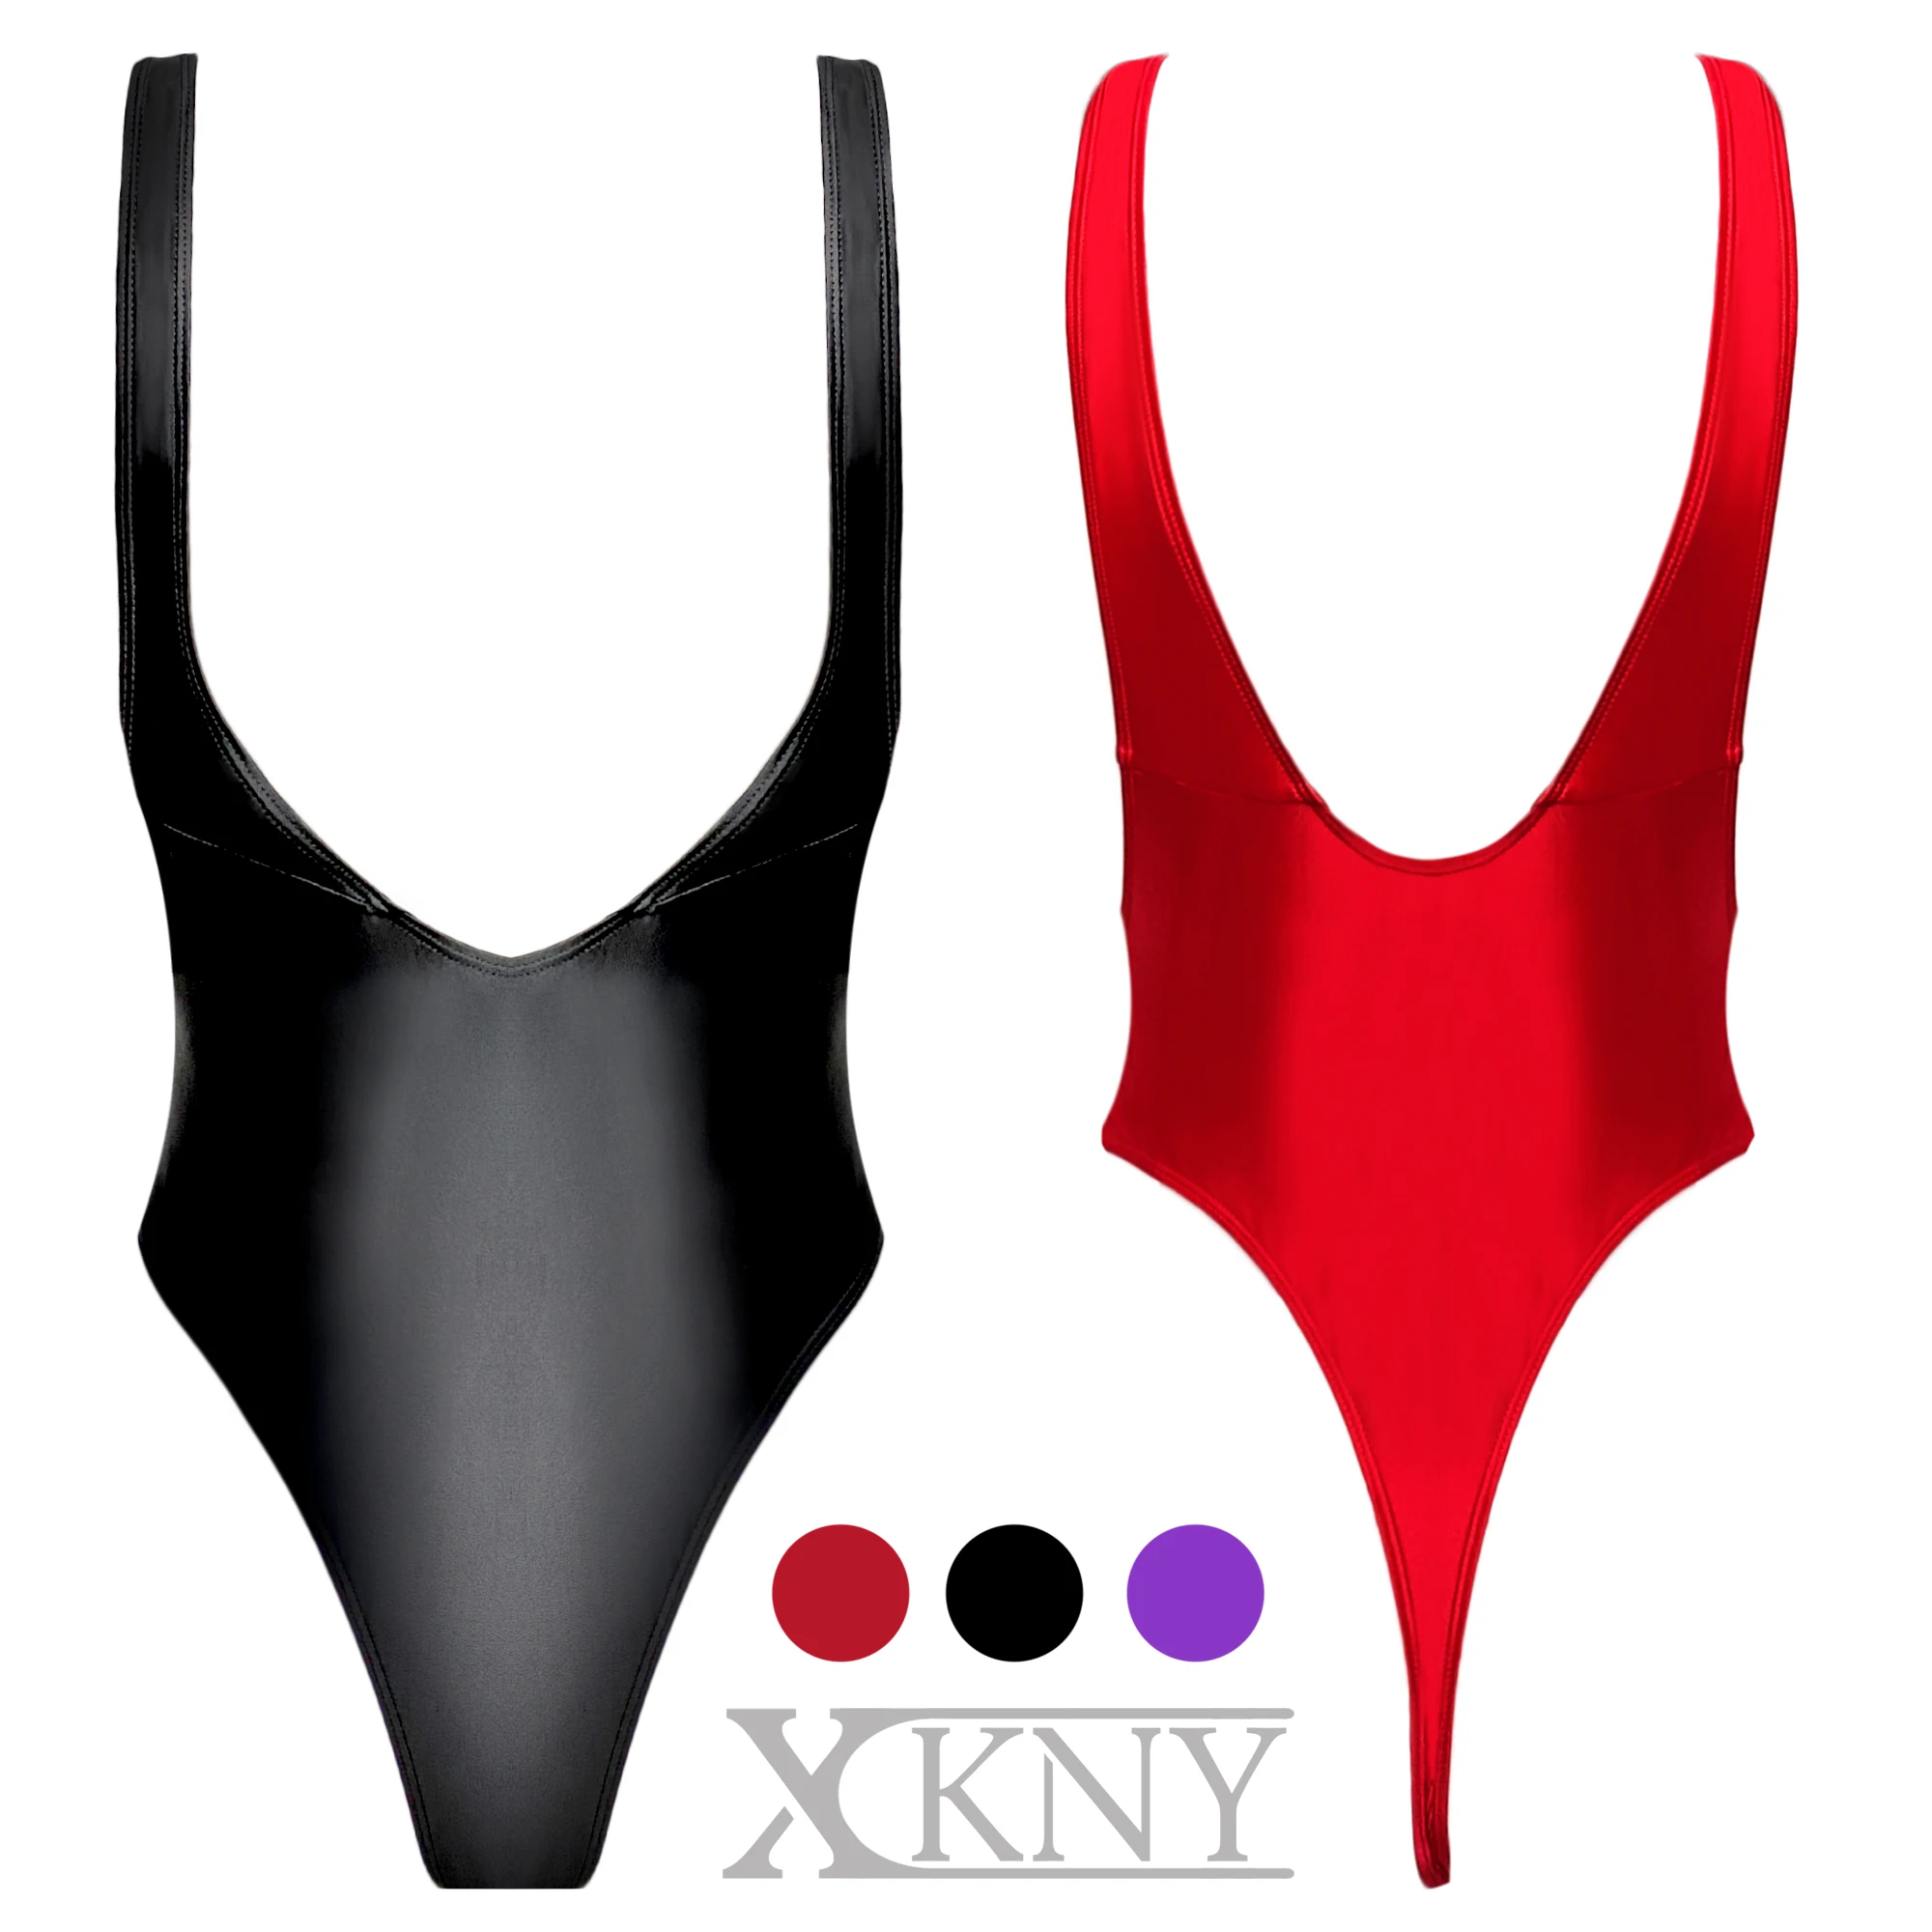 XCKNY-Cinturón de seda brillante para hombre y mujer, tirantes ajustados, ropa interior clásica con forma de T, cinturón de horquilla alta para decorar